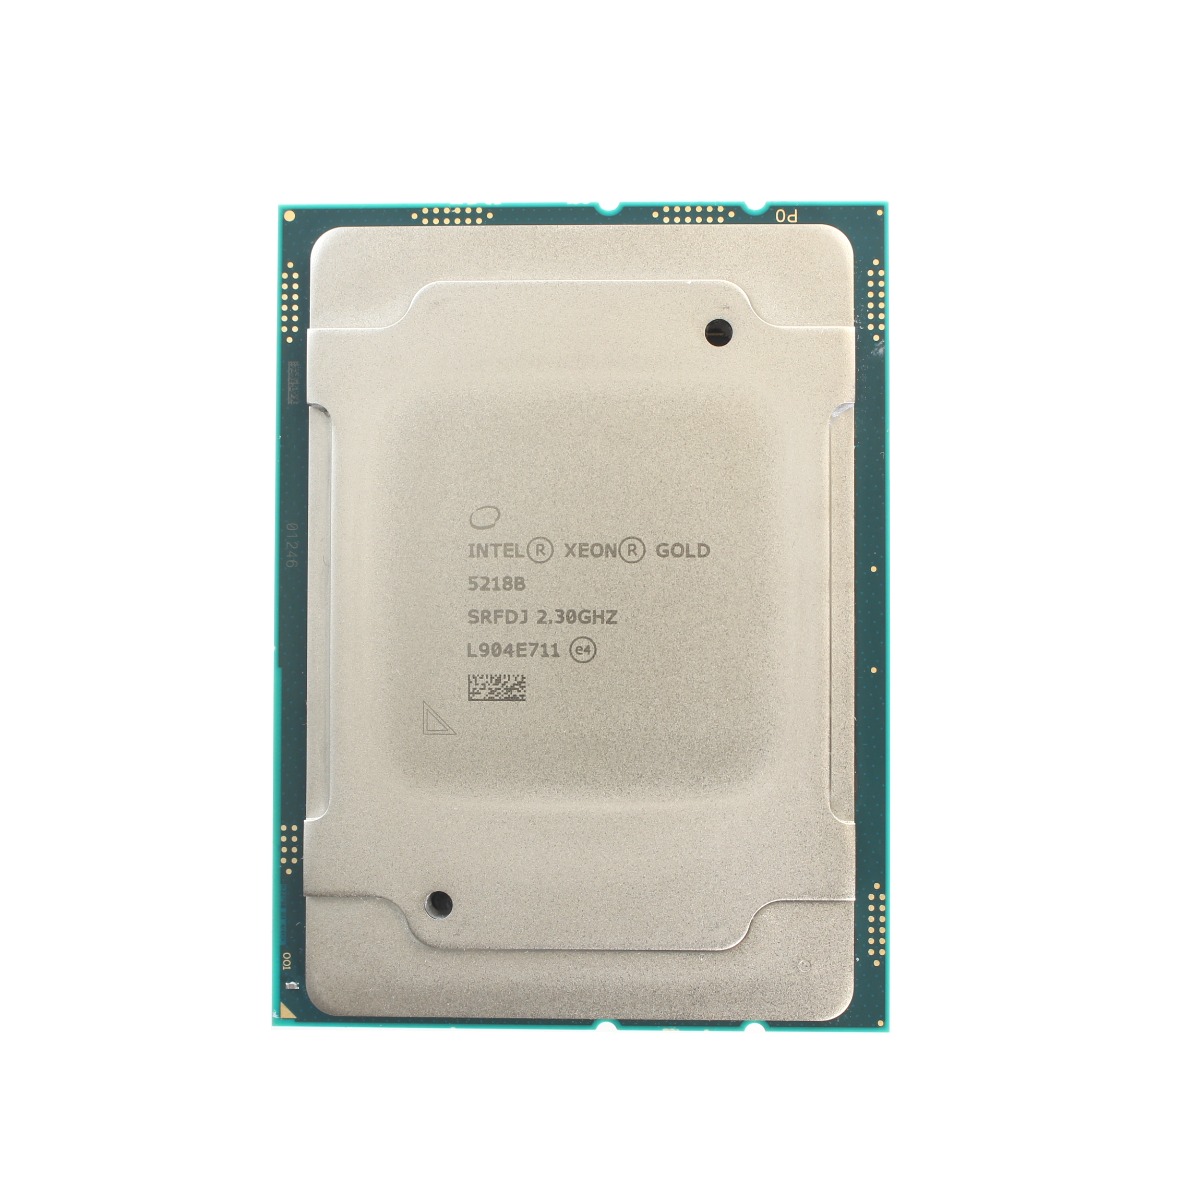 Intel Xeon Gold 5218B CPU Processor 16 Core 2.30GHz 22MB L3 Cache 125W SRFDJ